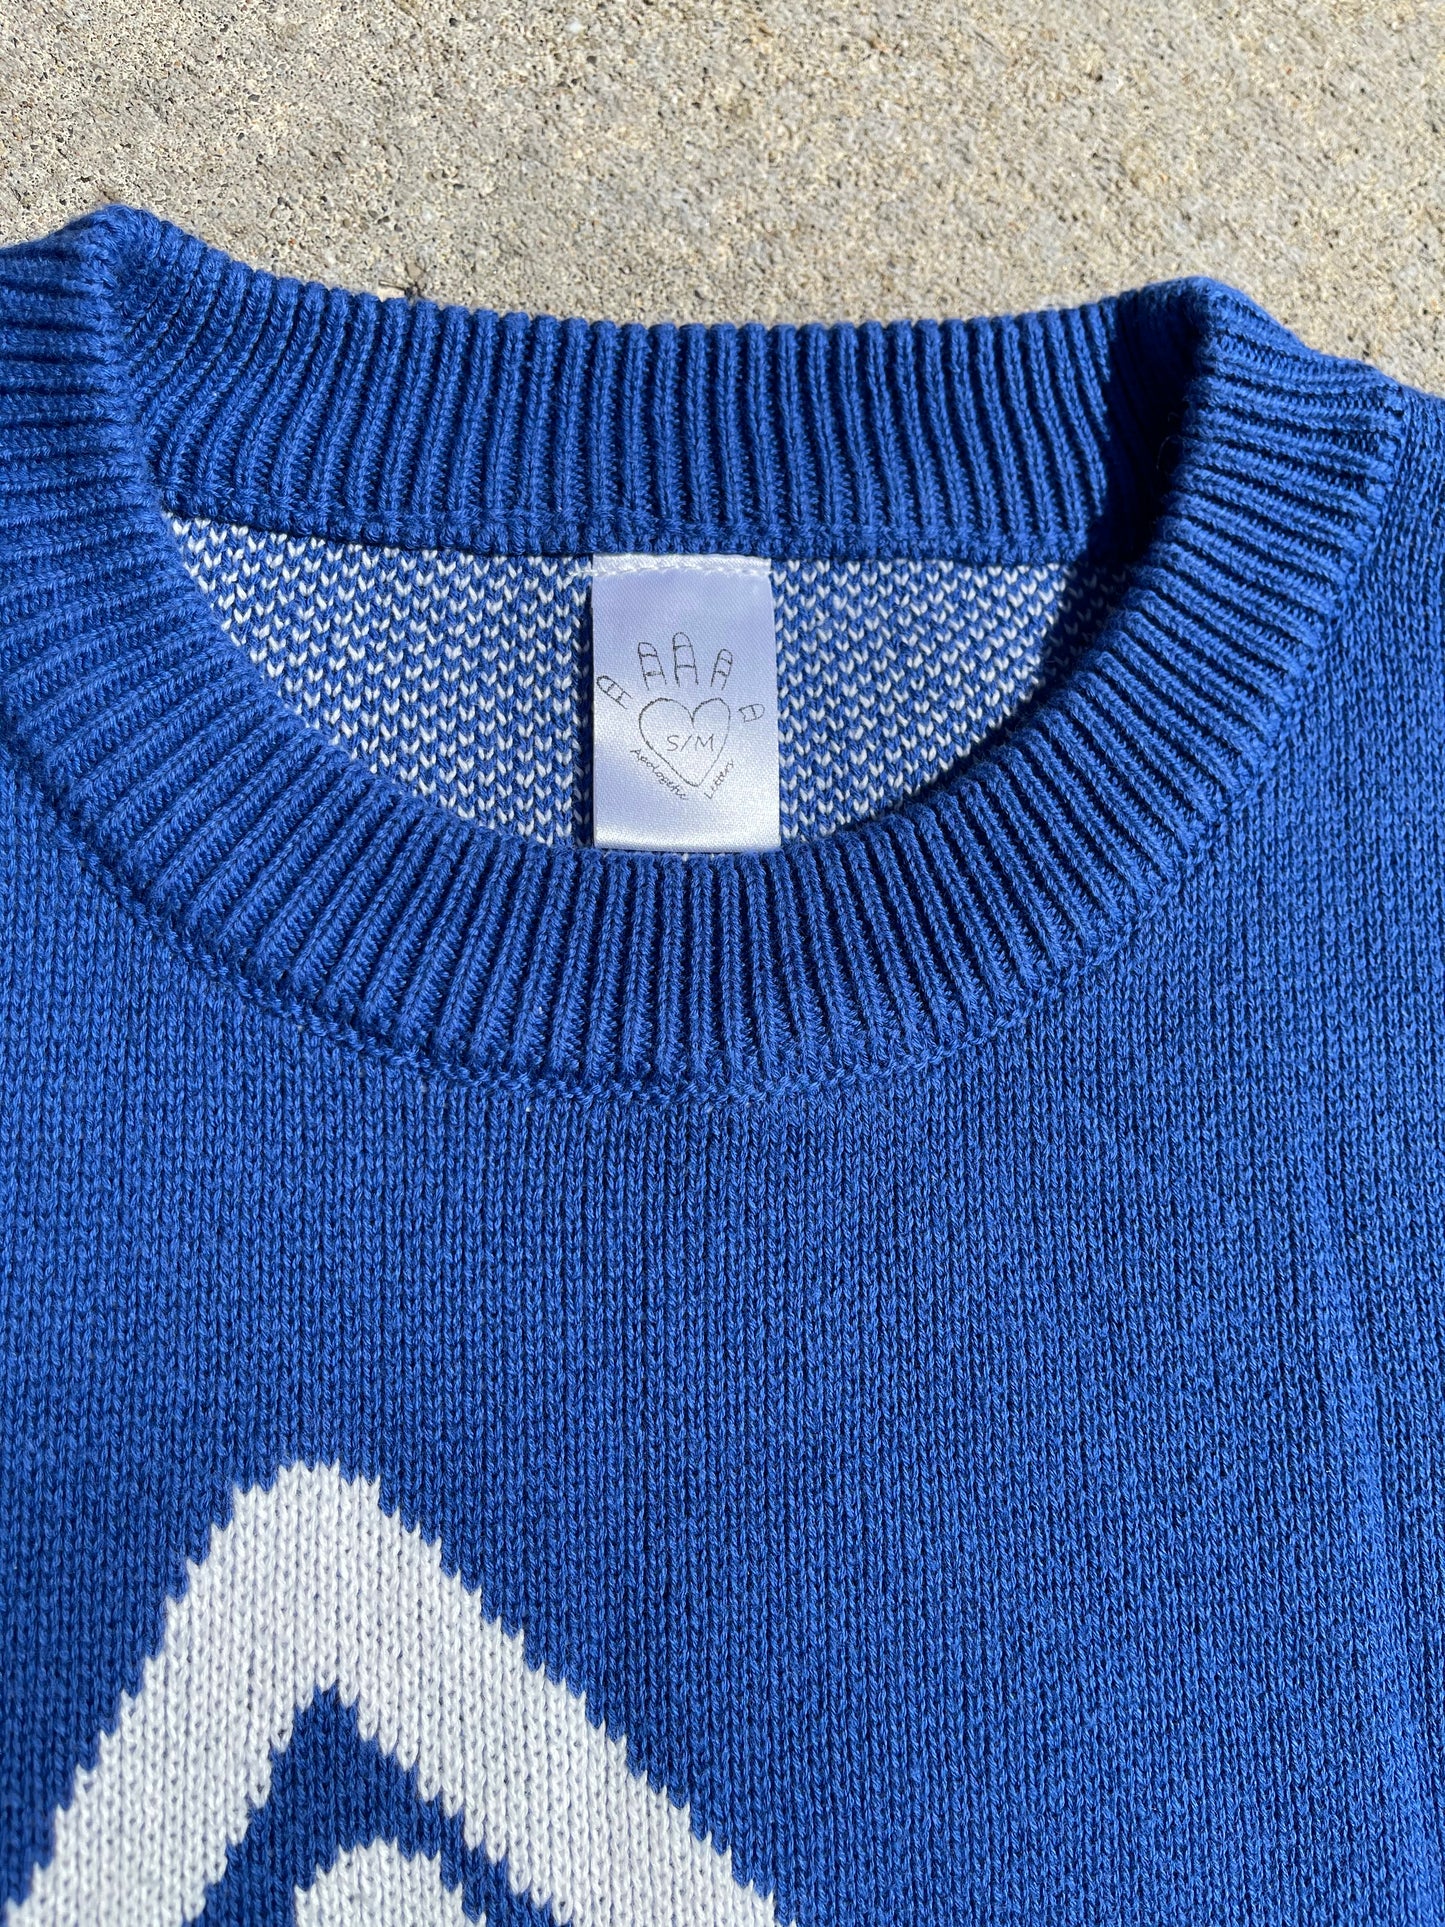 Heavenly Orbit Knit Sweater